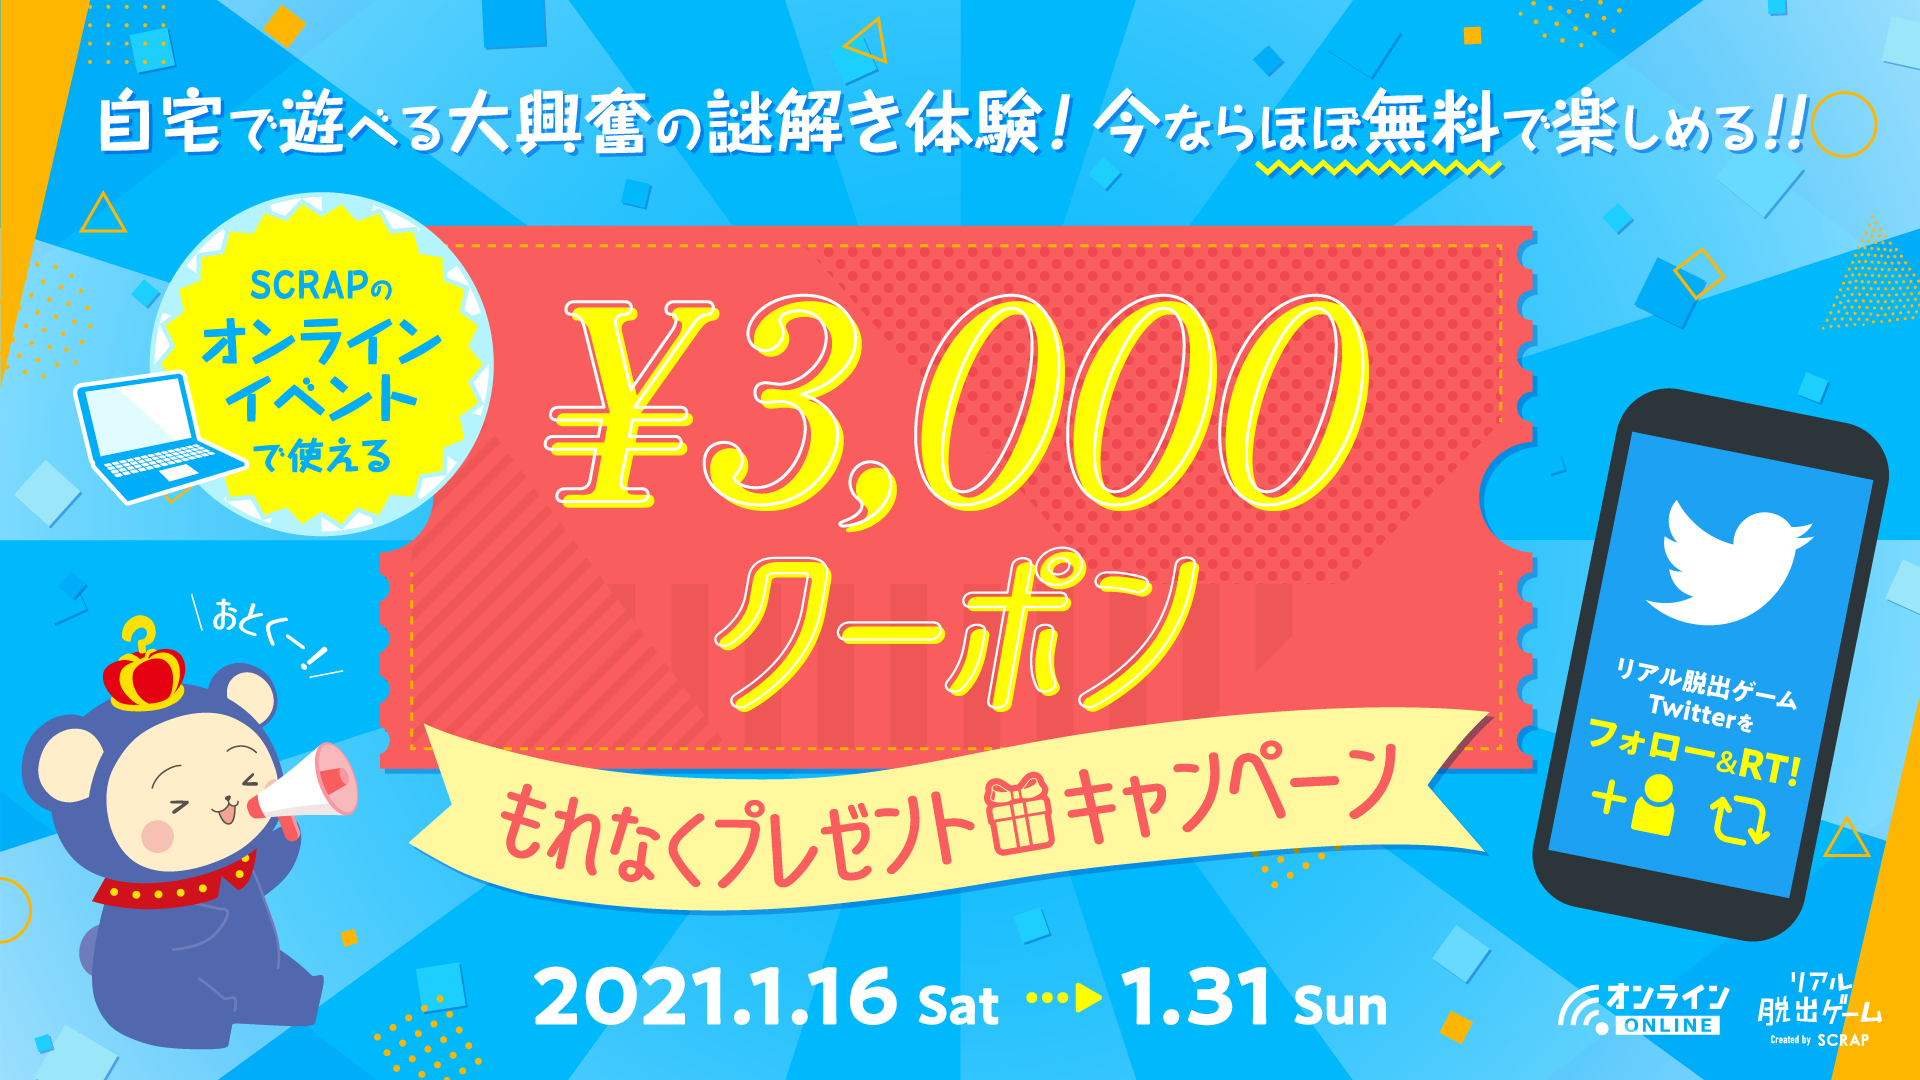 SCRAPのオンラインイベントで使える3,000円クーポンもれなくプレゼントキャンペーン